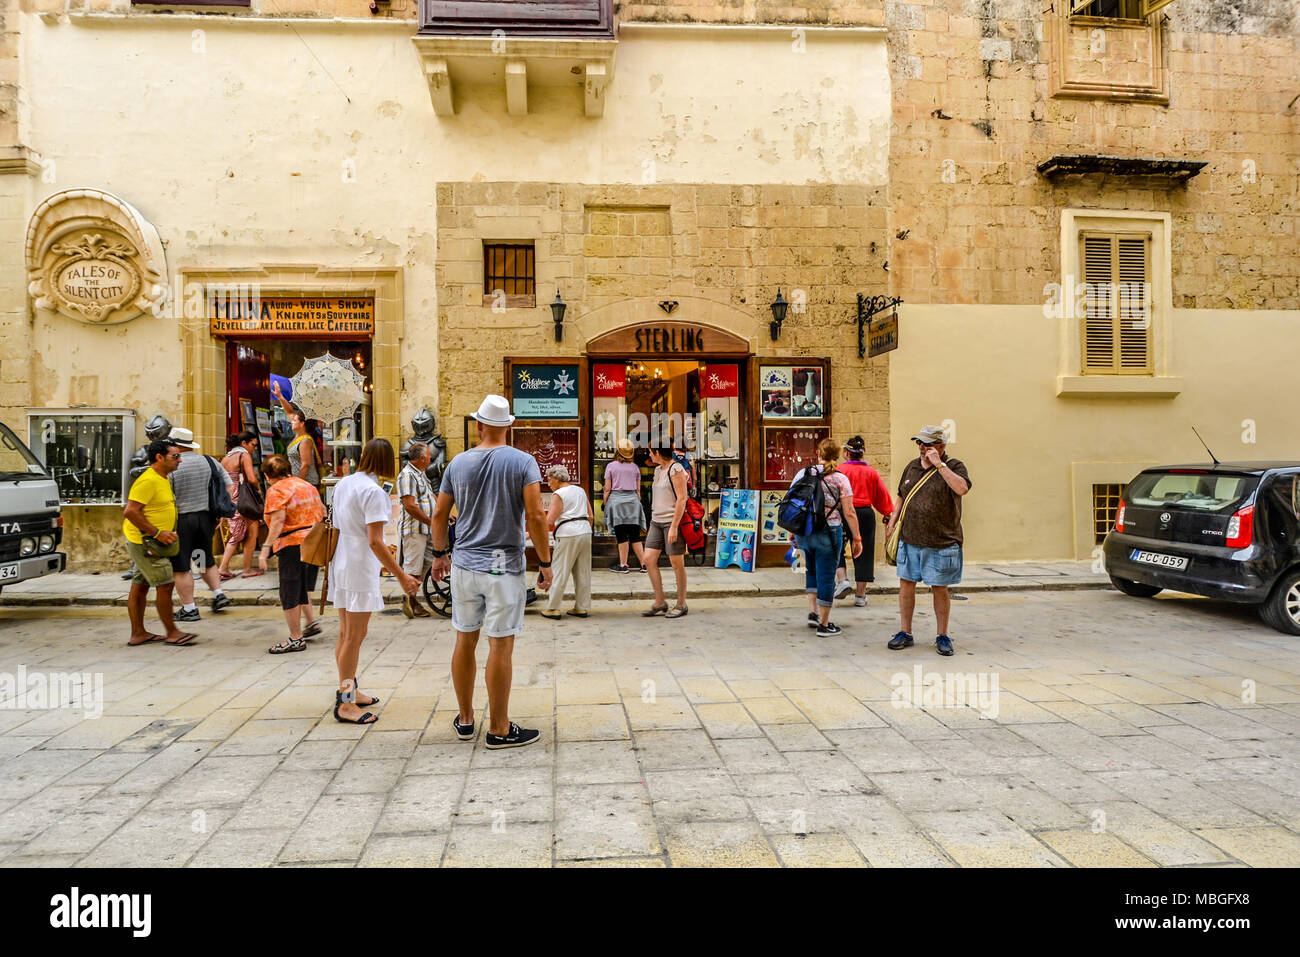 Turisti si riuniscono al di fuori di negozi di souvenir e articoli da regalo nell'antica città di Mdina sull'isola mediterranea di Malta Foto Stock